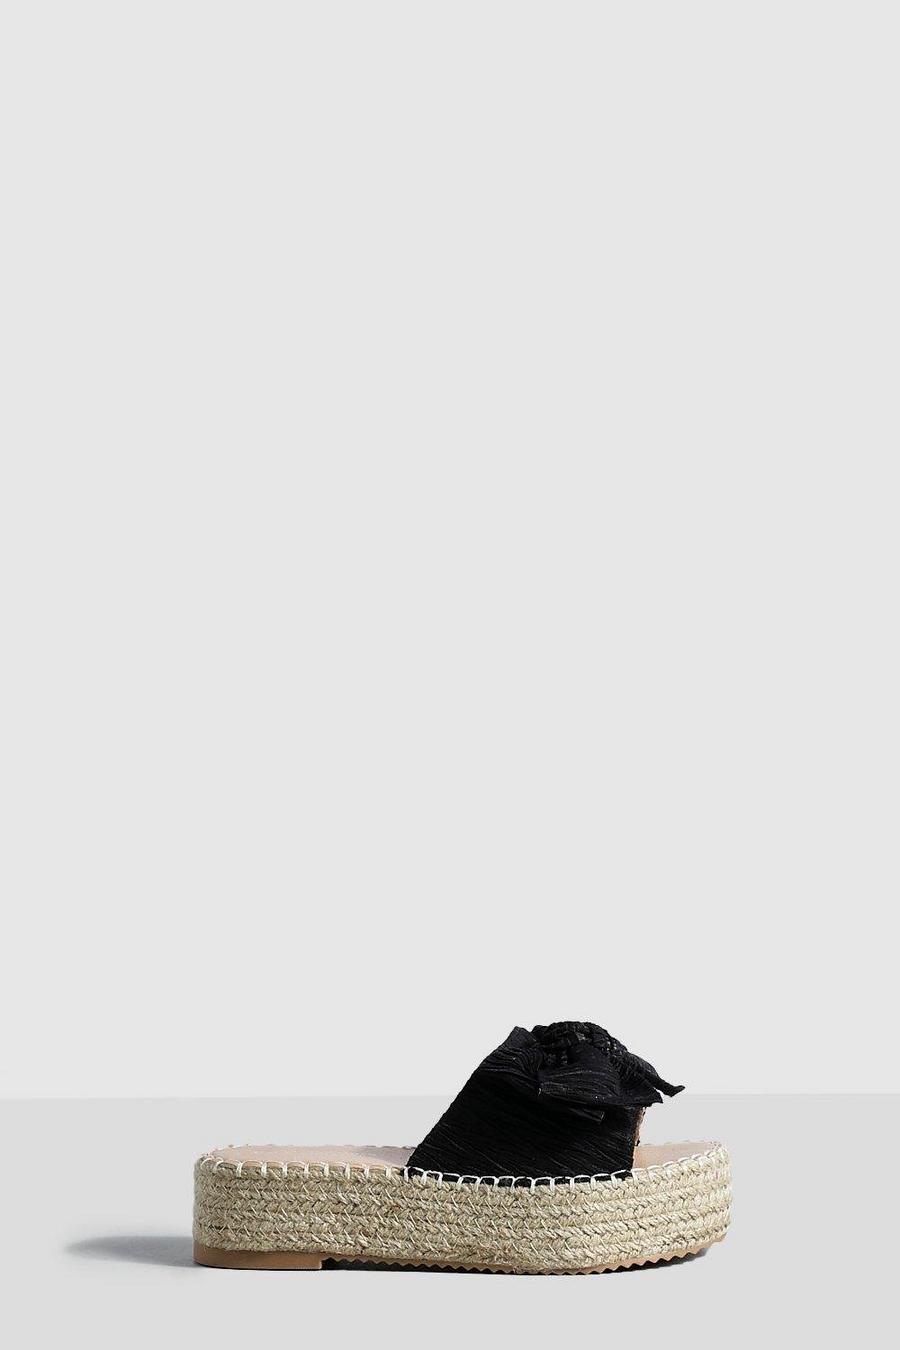 Sandali Espadrillas Flatform con fiocco, Black nero